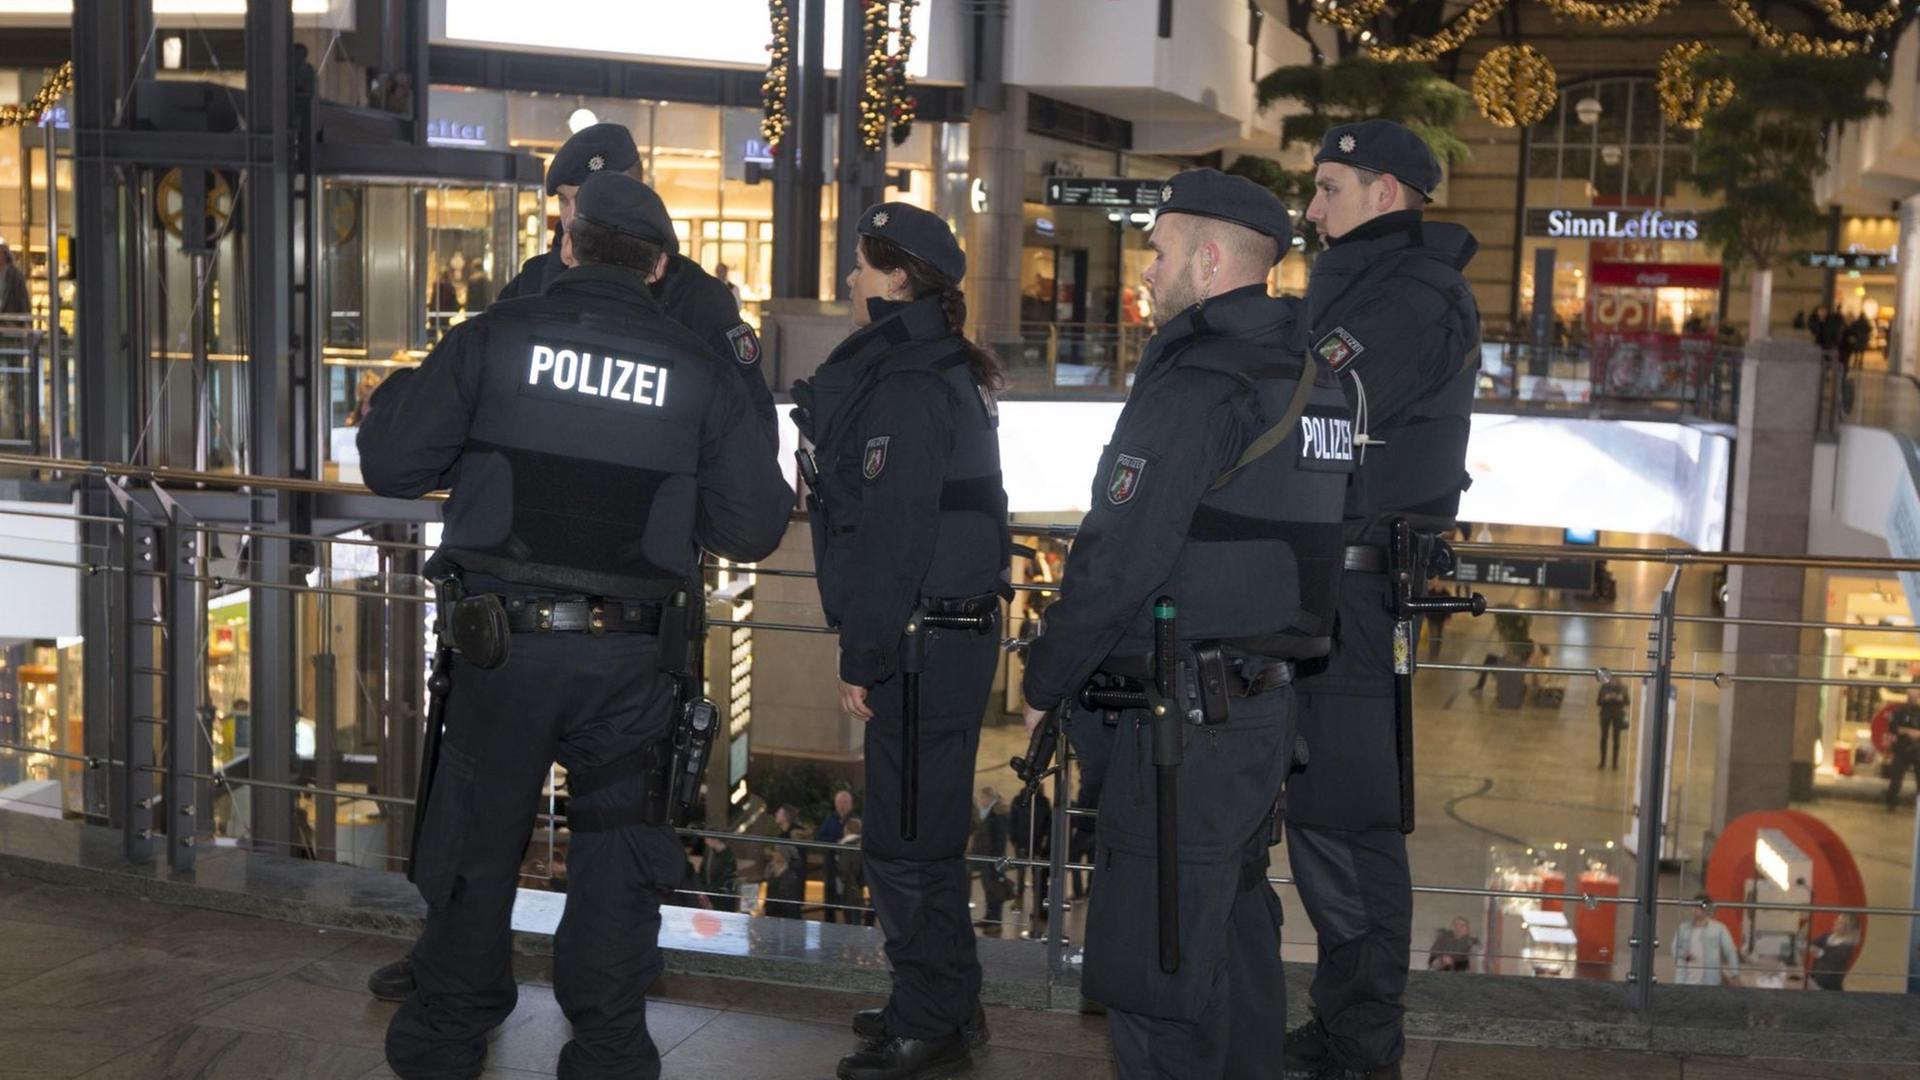 Einheiten der Polizei in Oberhausen (Nordrhein-Westfalen) während eines Einsatzes im Einkaufszentrum Centro.